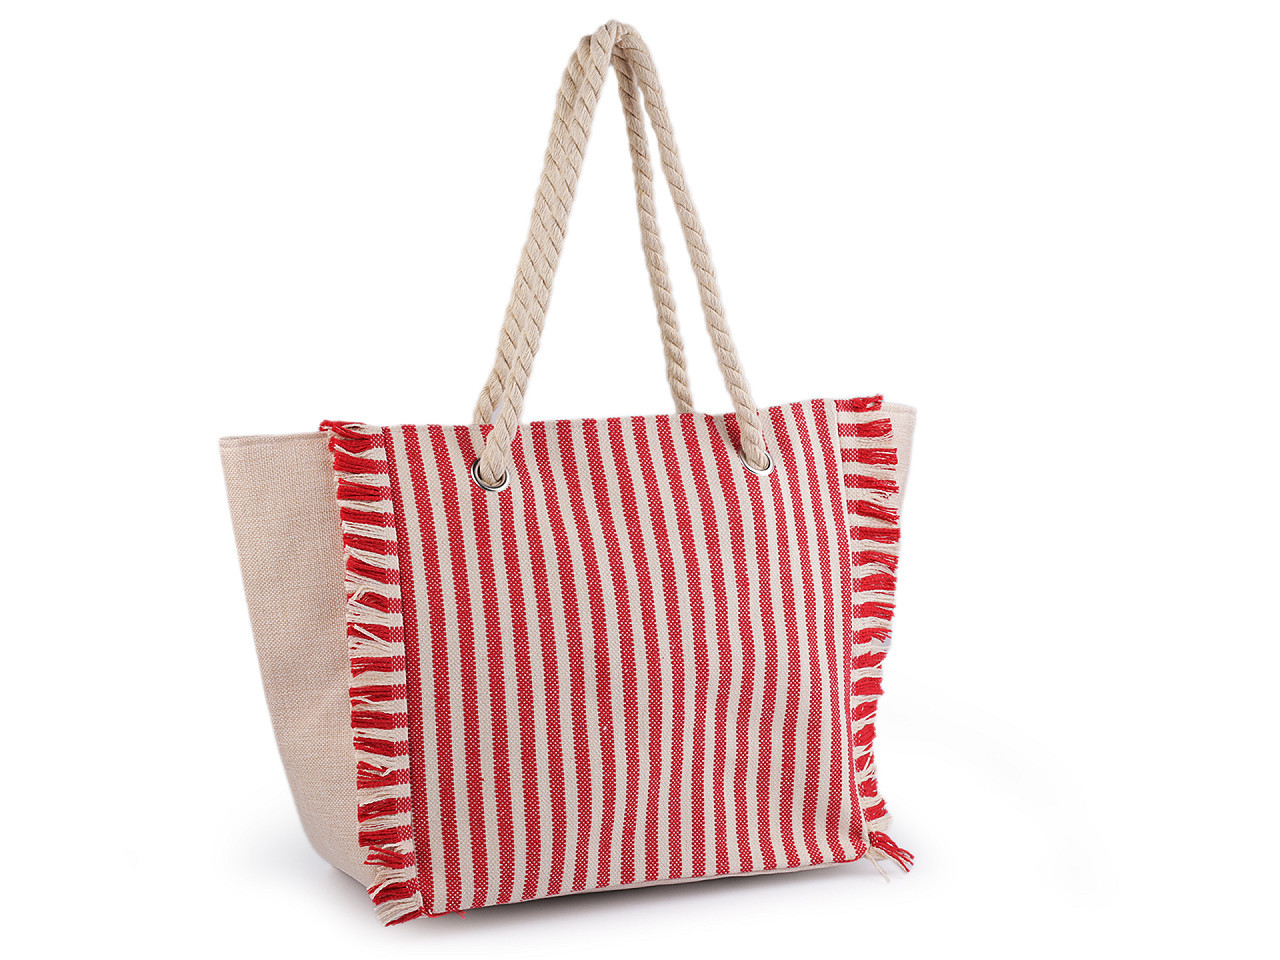 Letní taška s pruhy 33x52 cm, barva 2 červená